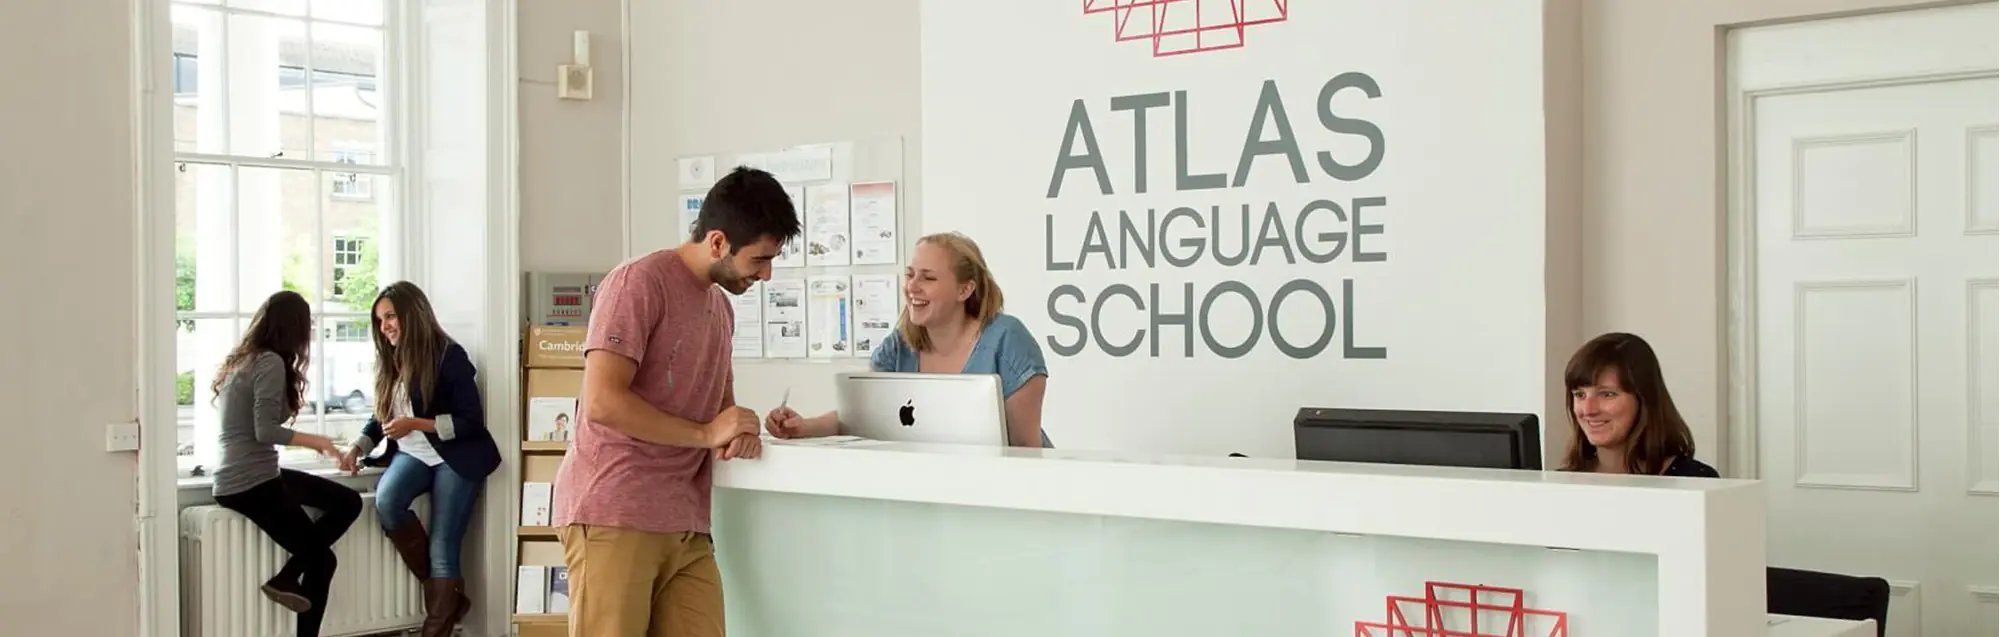 Programas inglés + trabajo remunerado de Atlas Language School